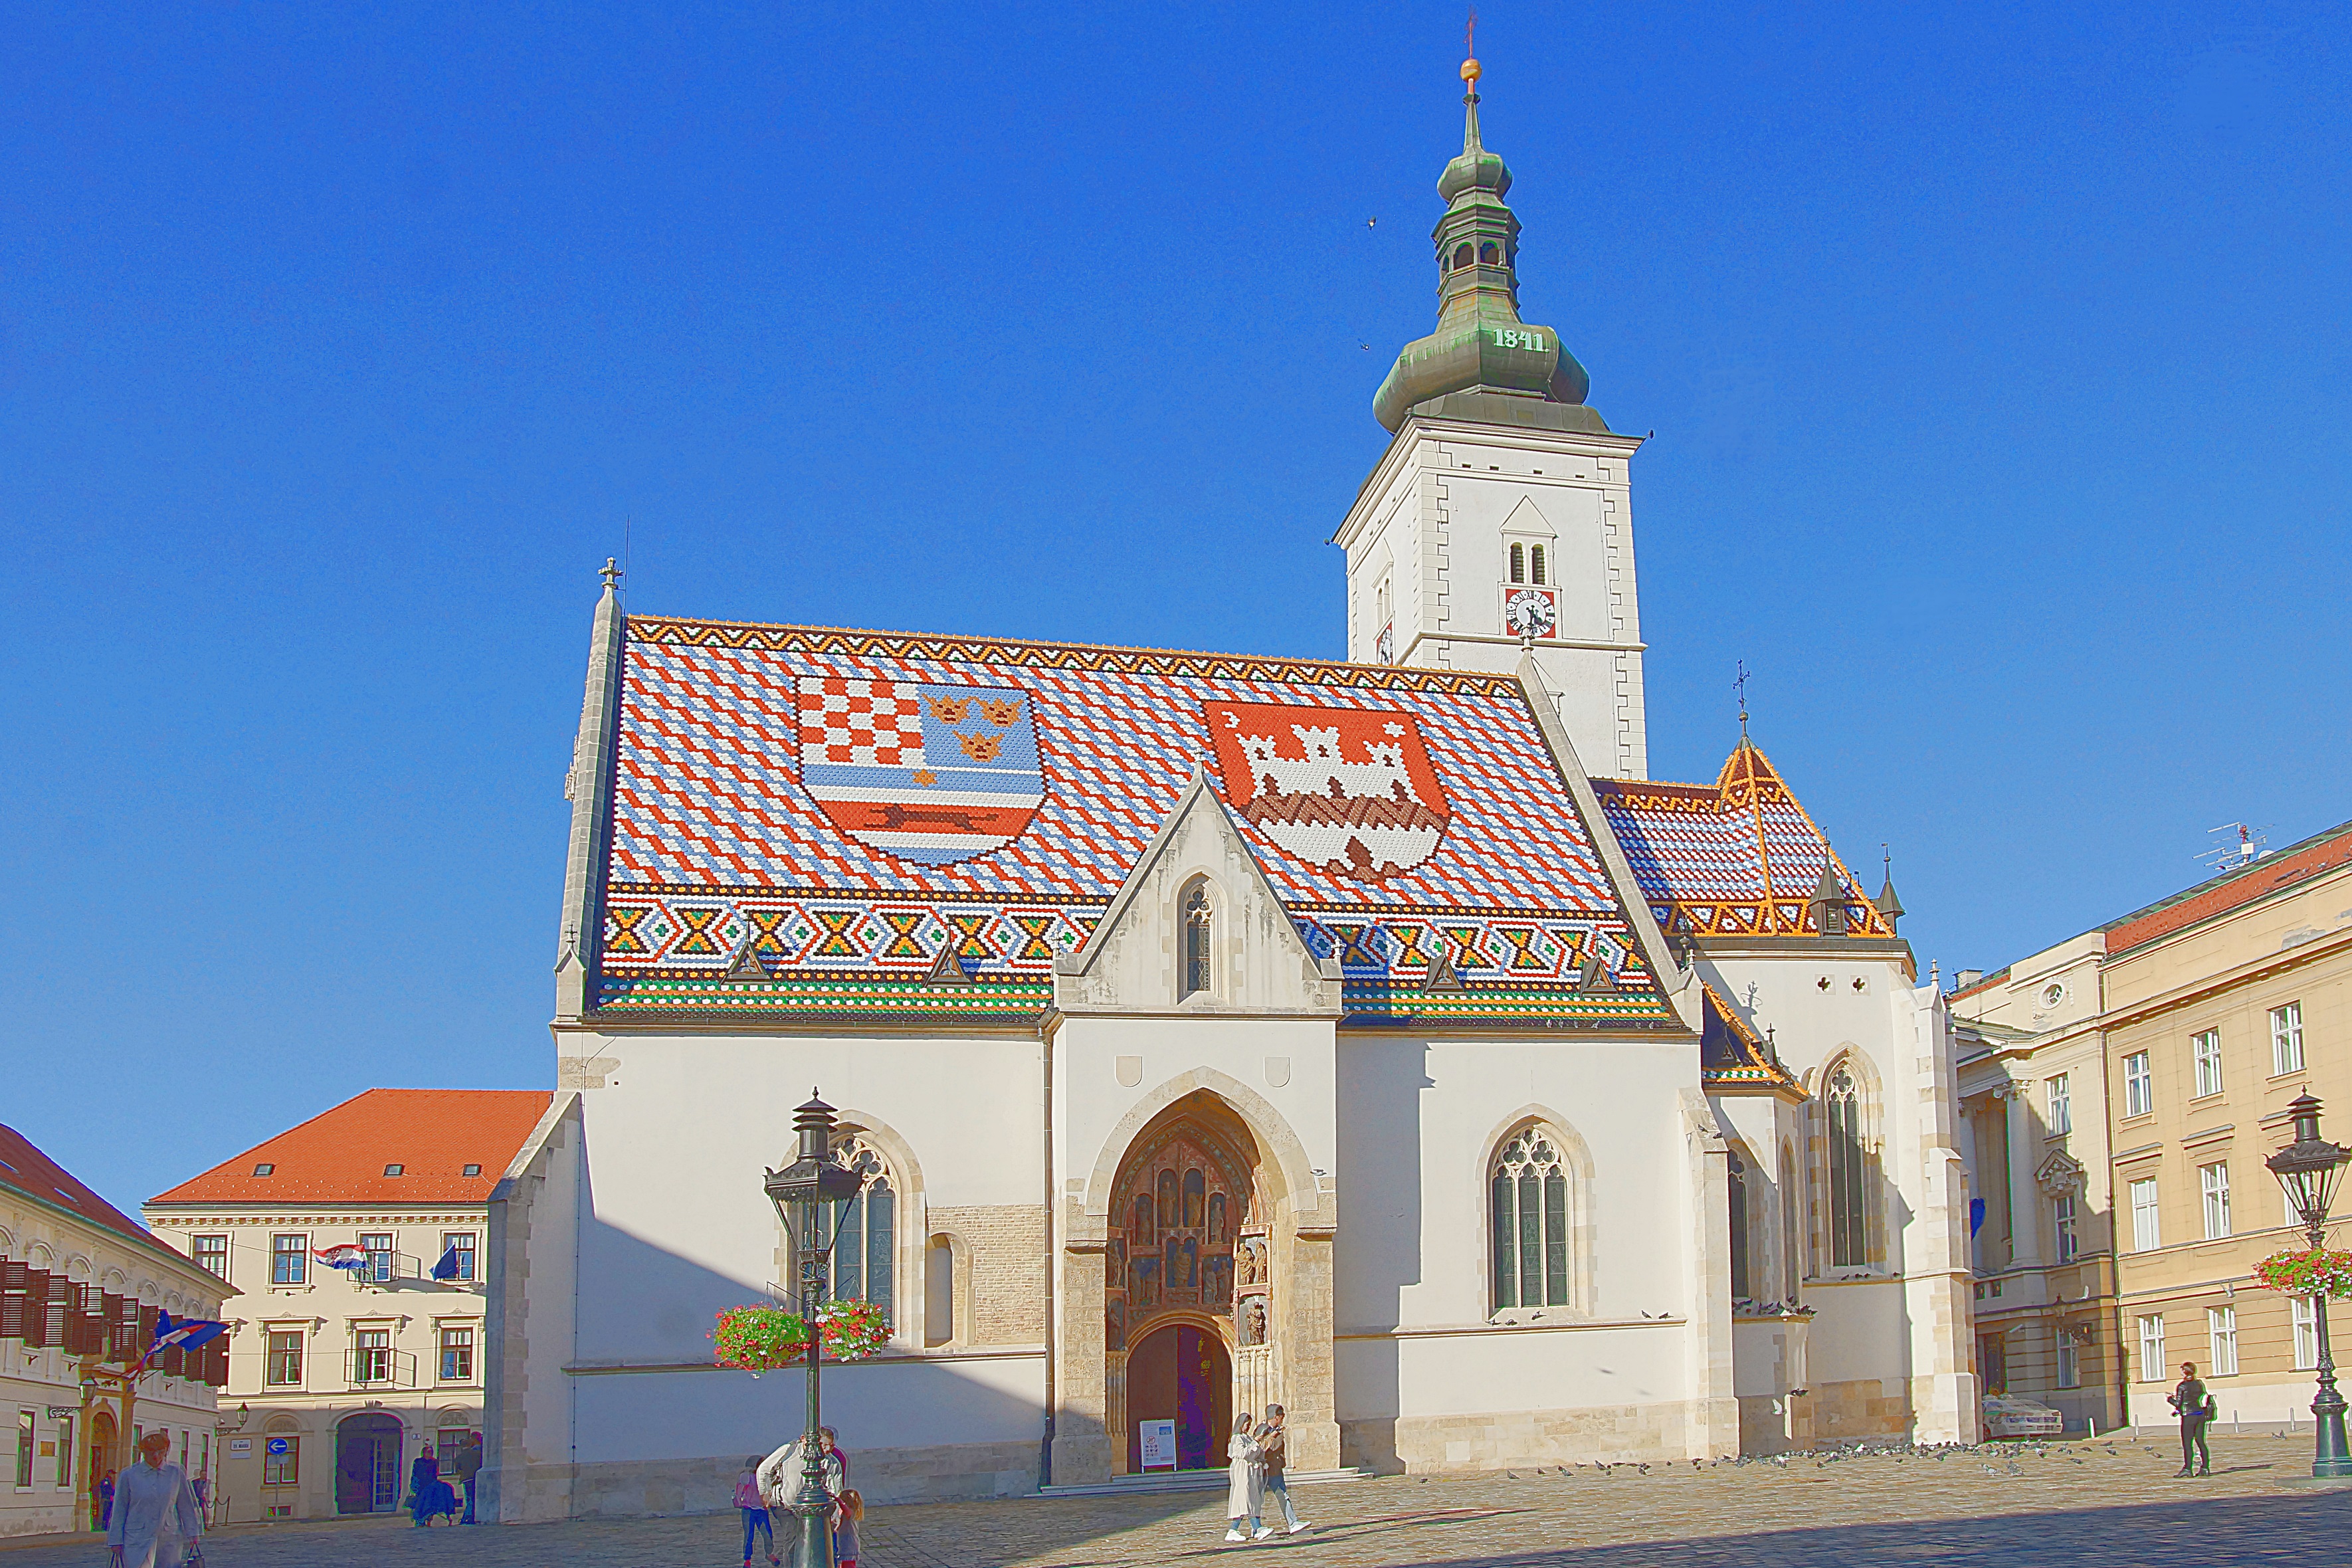 Церковь Св. Марка 13 в. в Загребе. Фото Морошкина В.В.